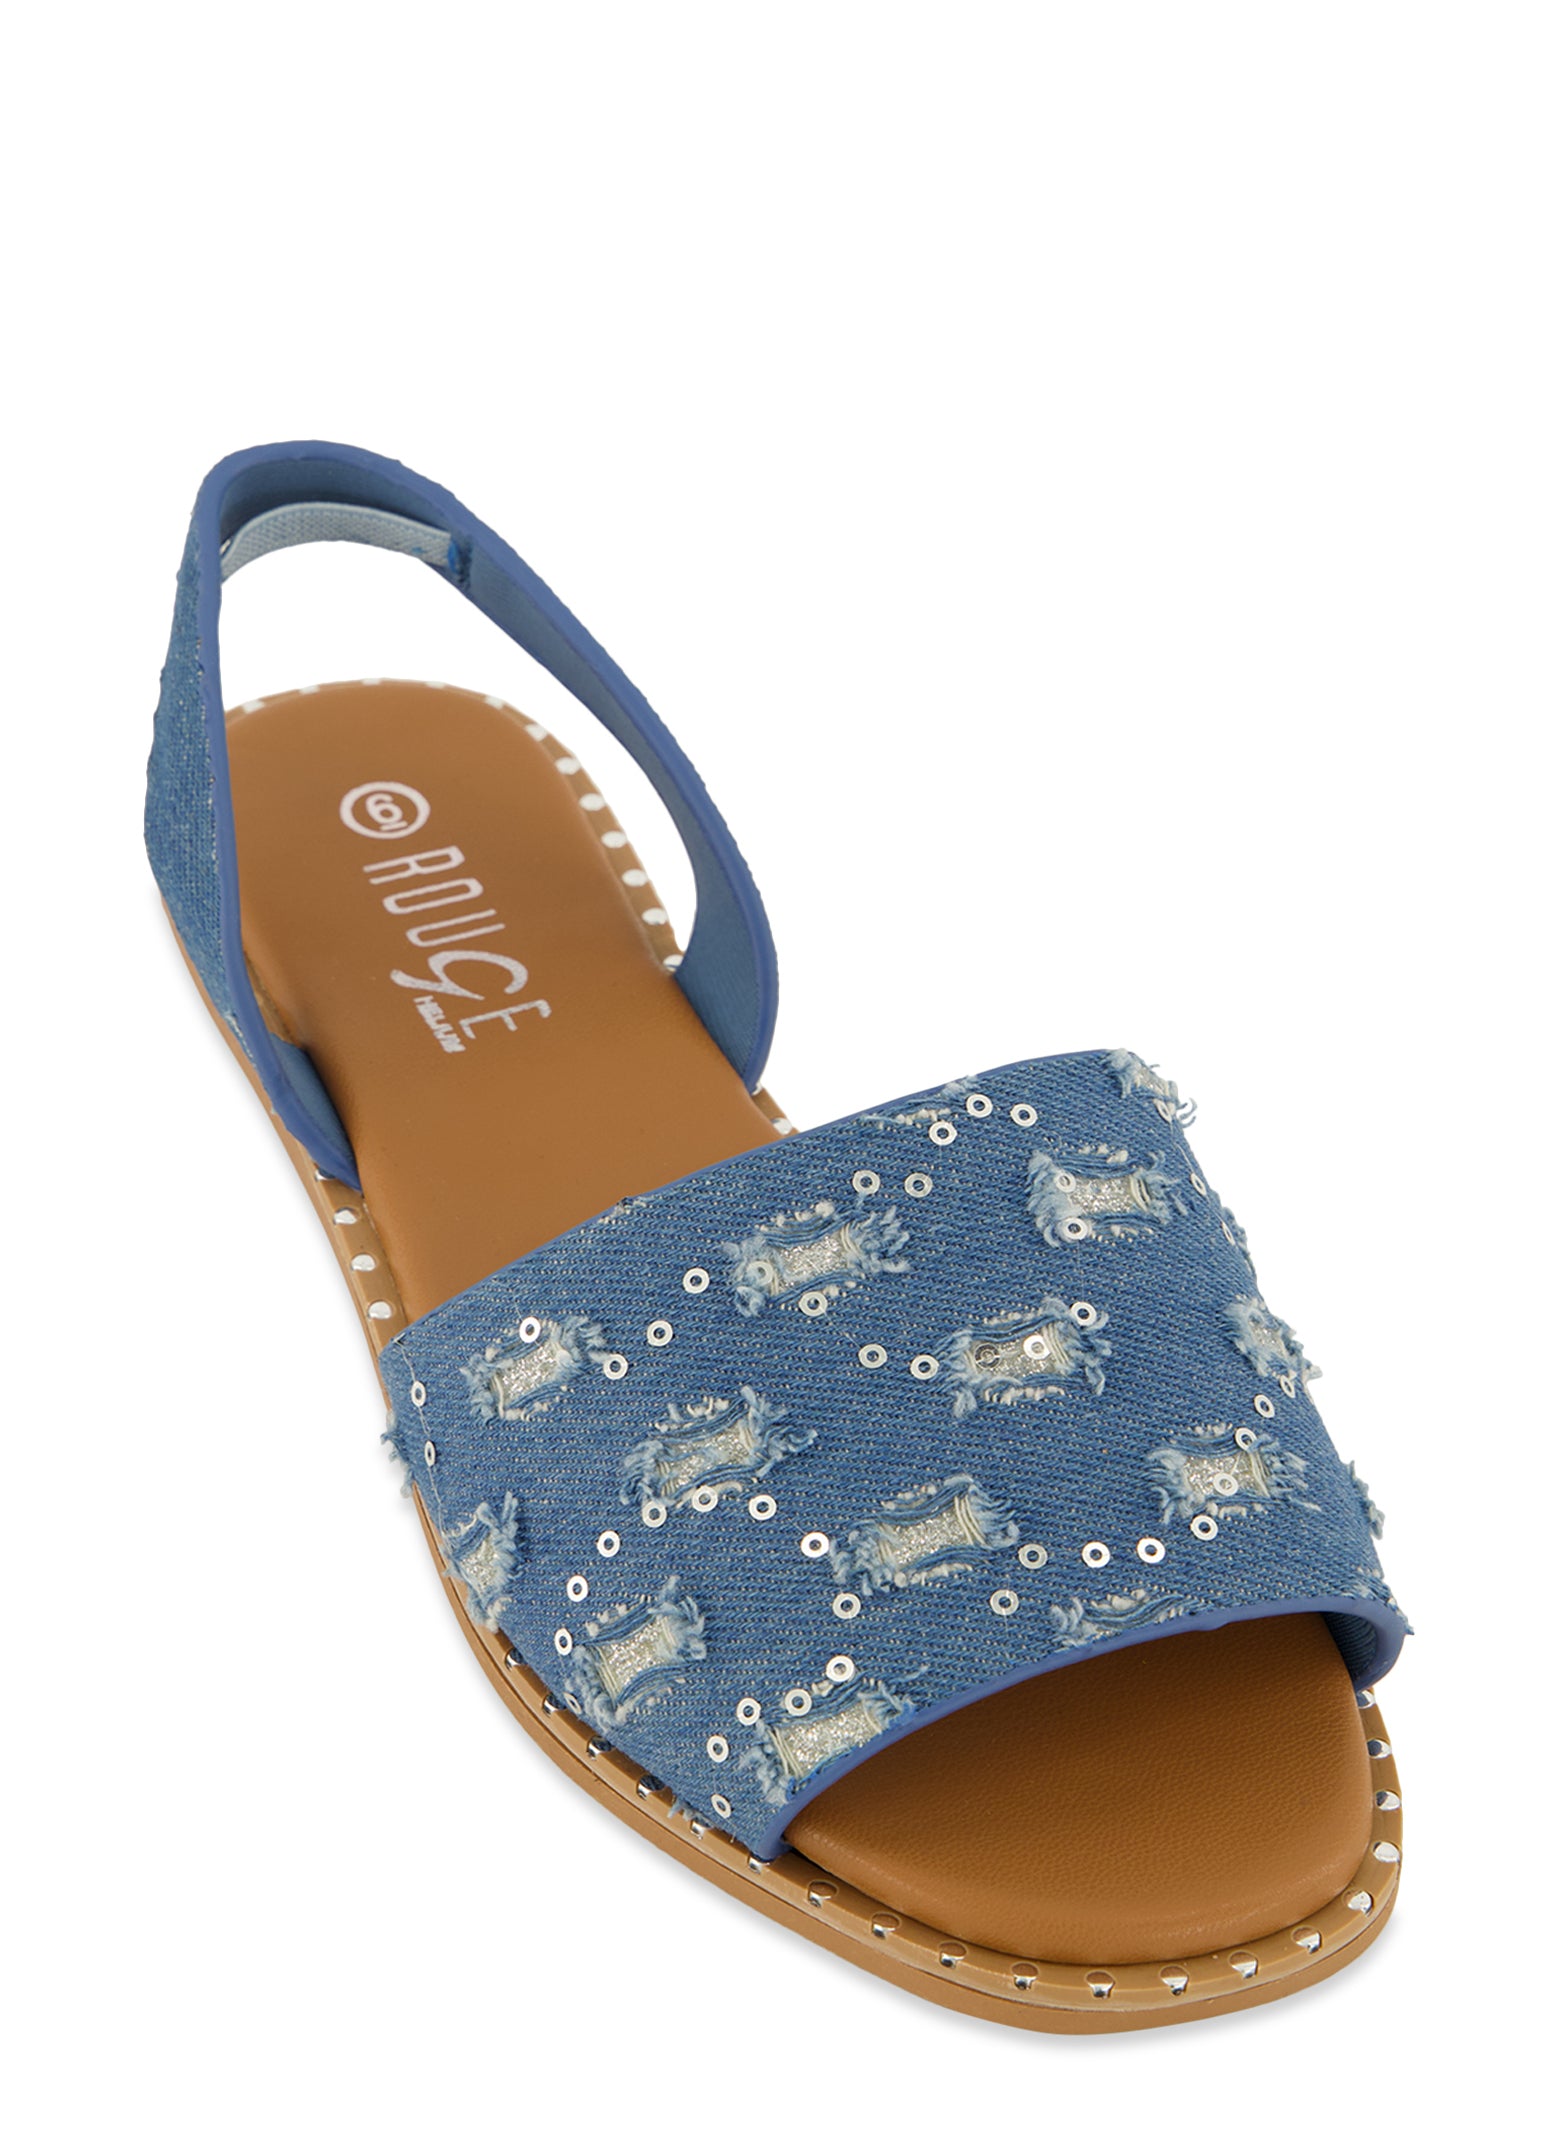 Heeled platform sandals - Denim blue - Ladies | H&M IN